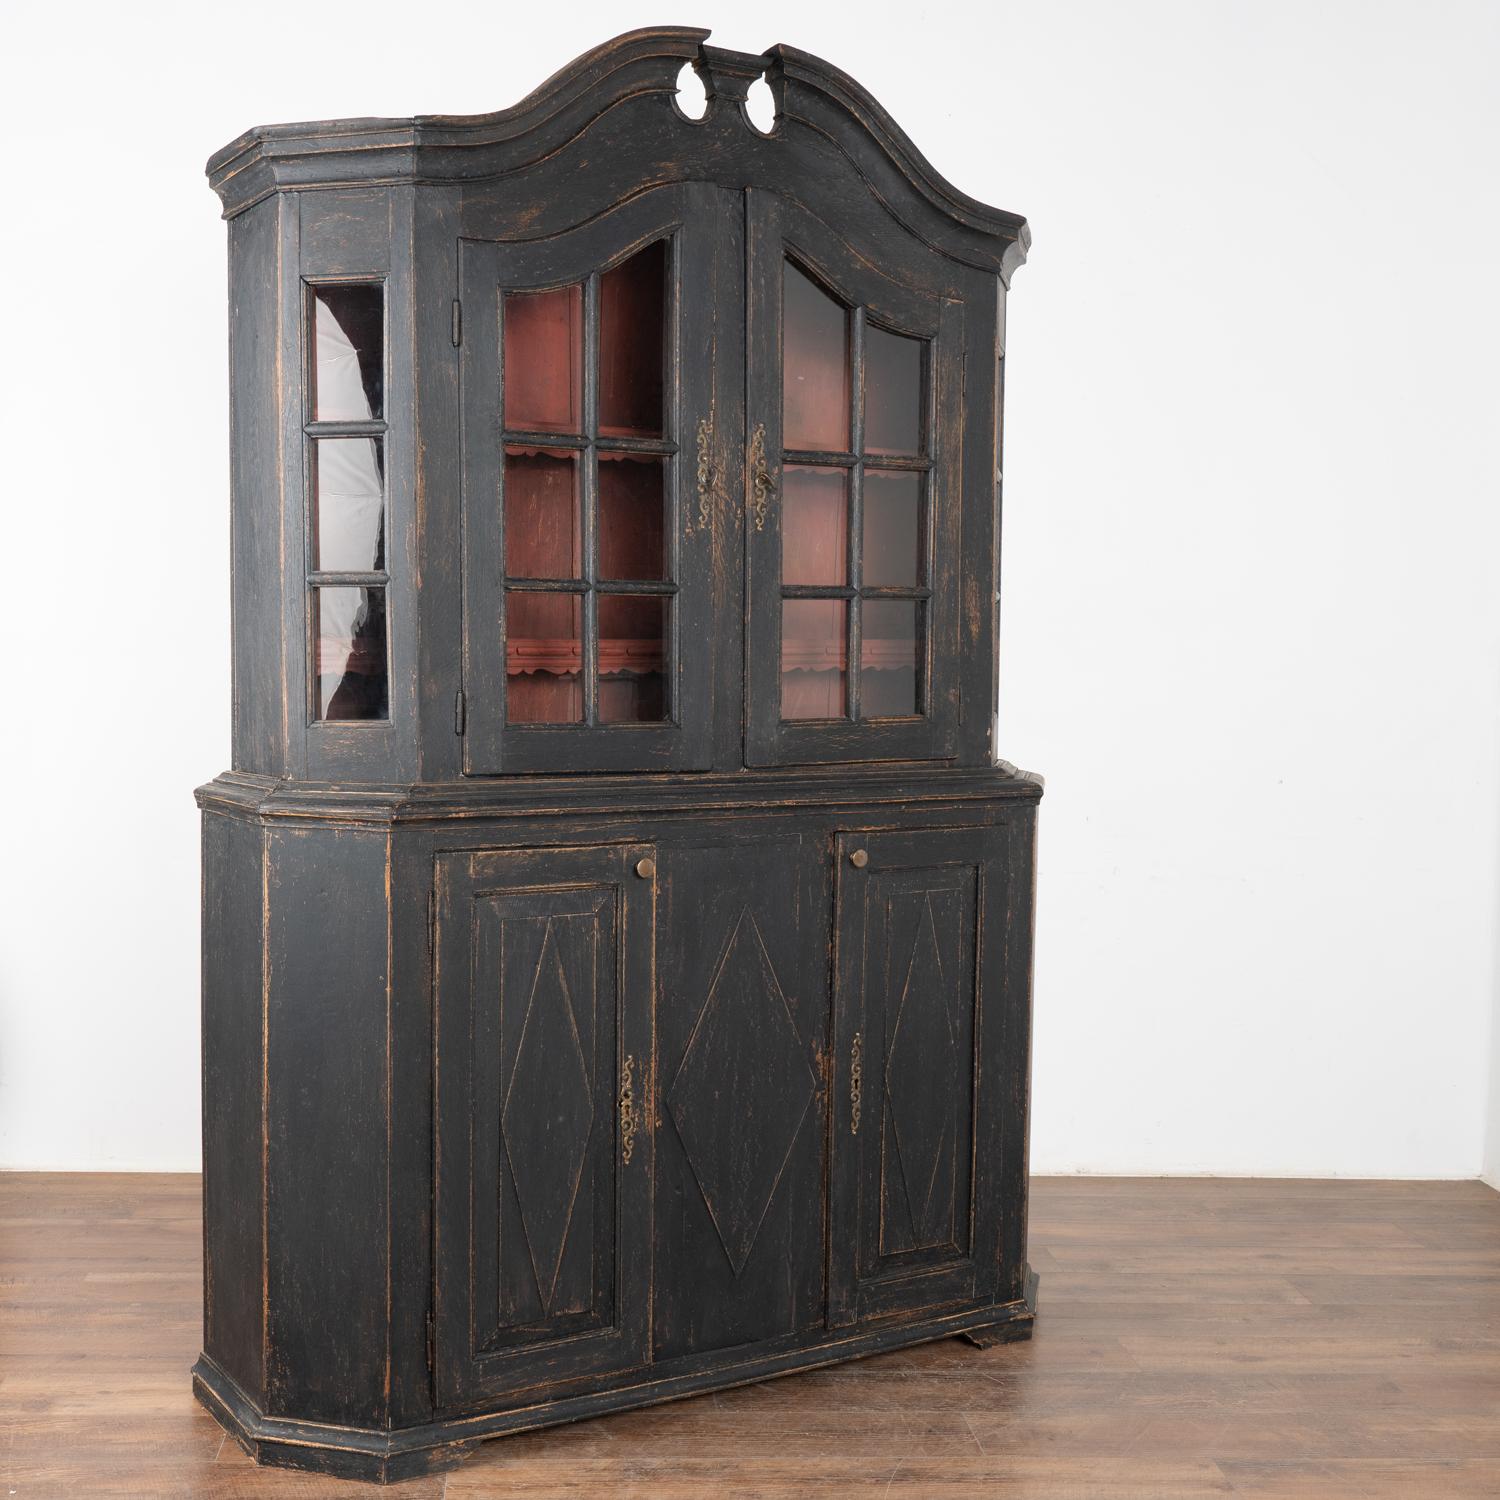 Cette armoire en pin danois peut être utilisée comme vitrine ou comme bibliothèque. Les portes vitrées supérieures permettent une belle mise en valeur des collections qu'elles contiennent.
La nouvelle finition peinte en noir, appliquée par des